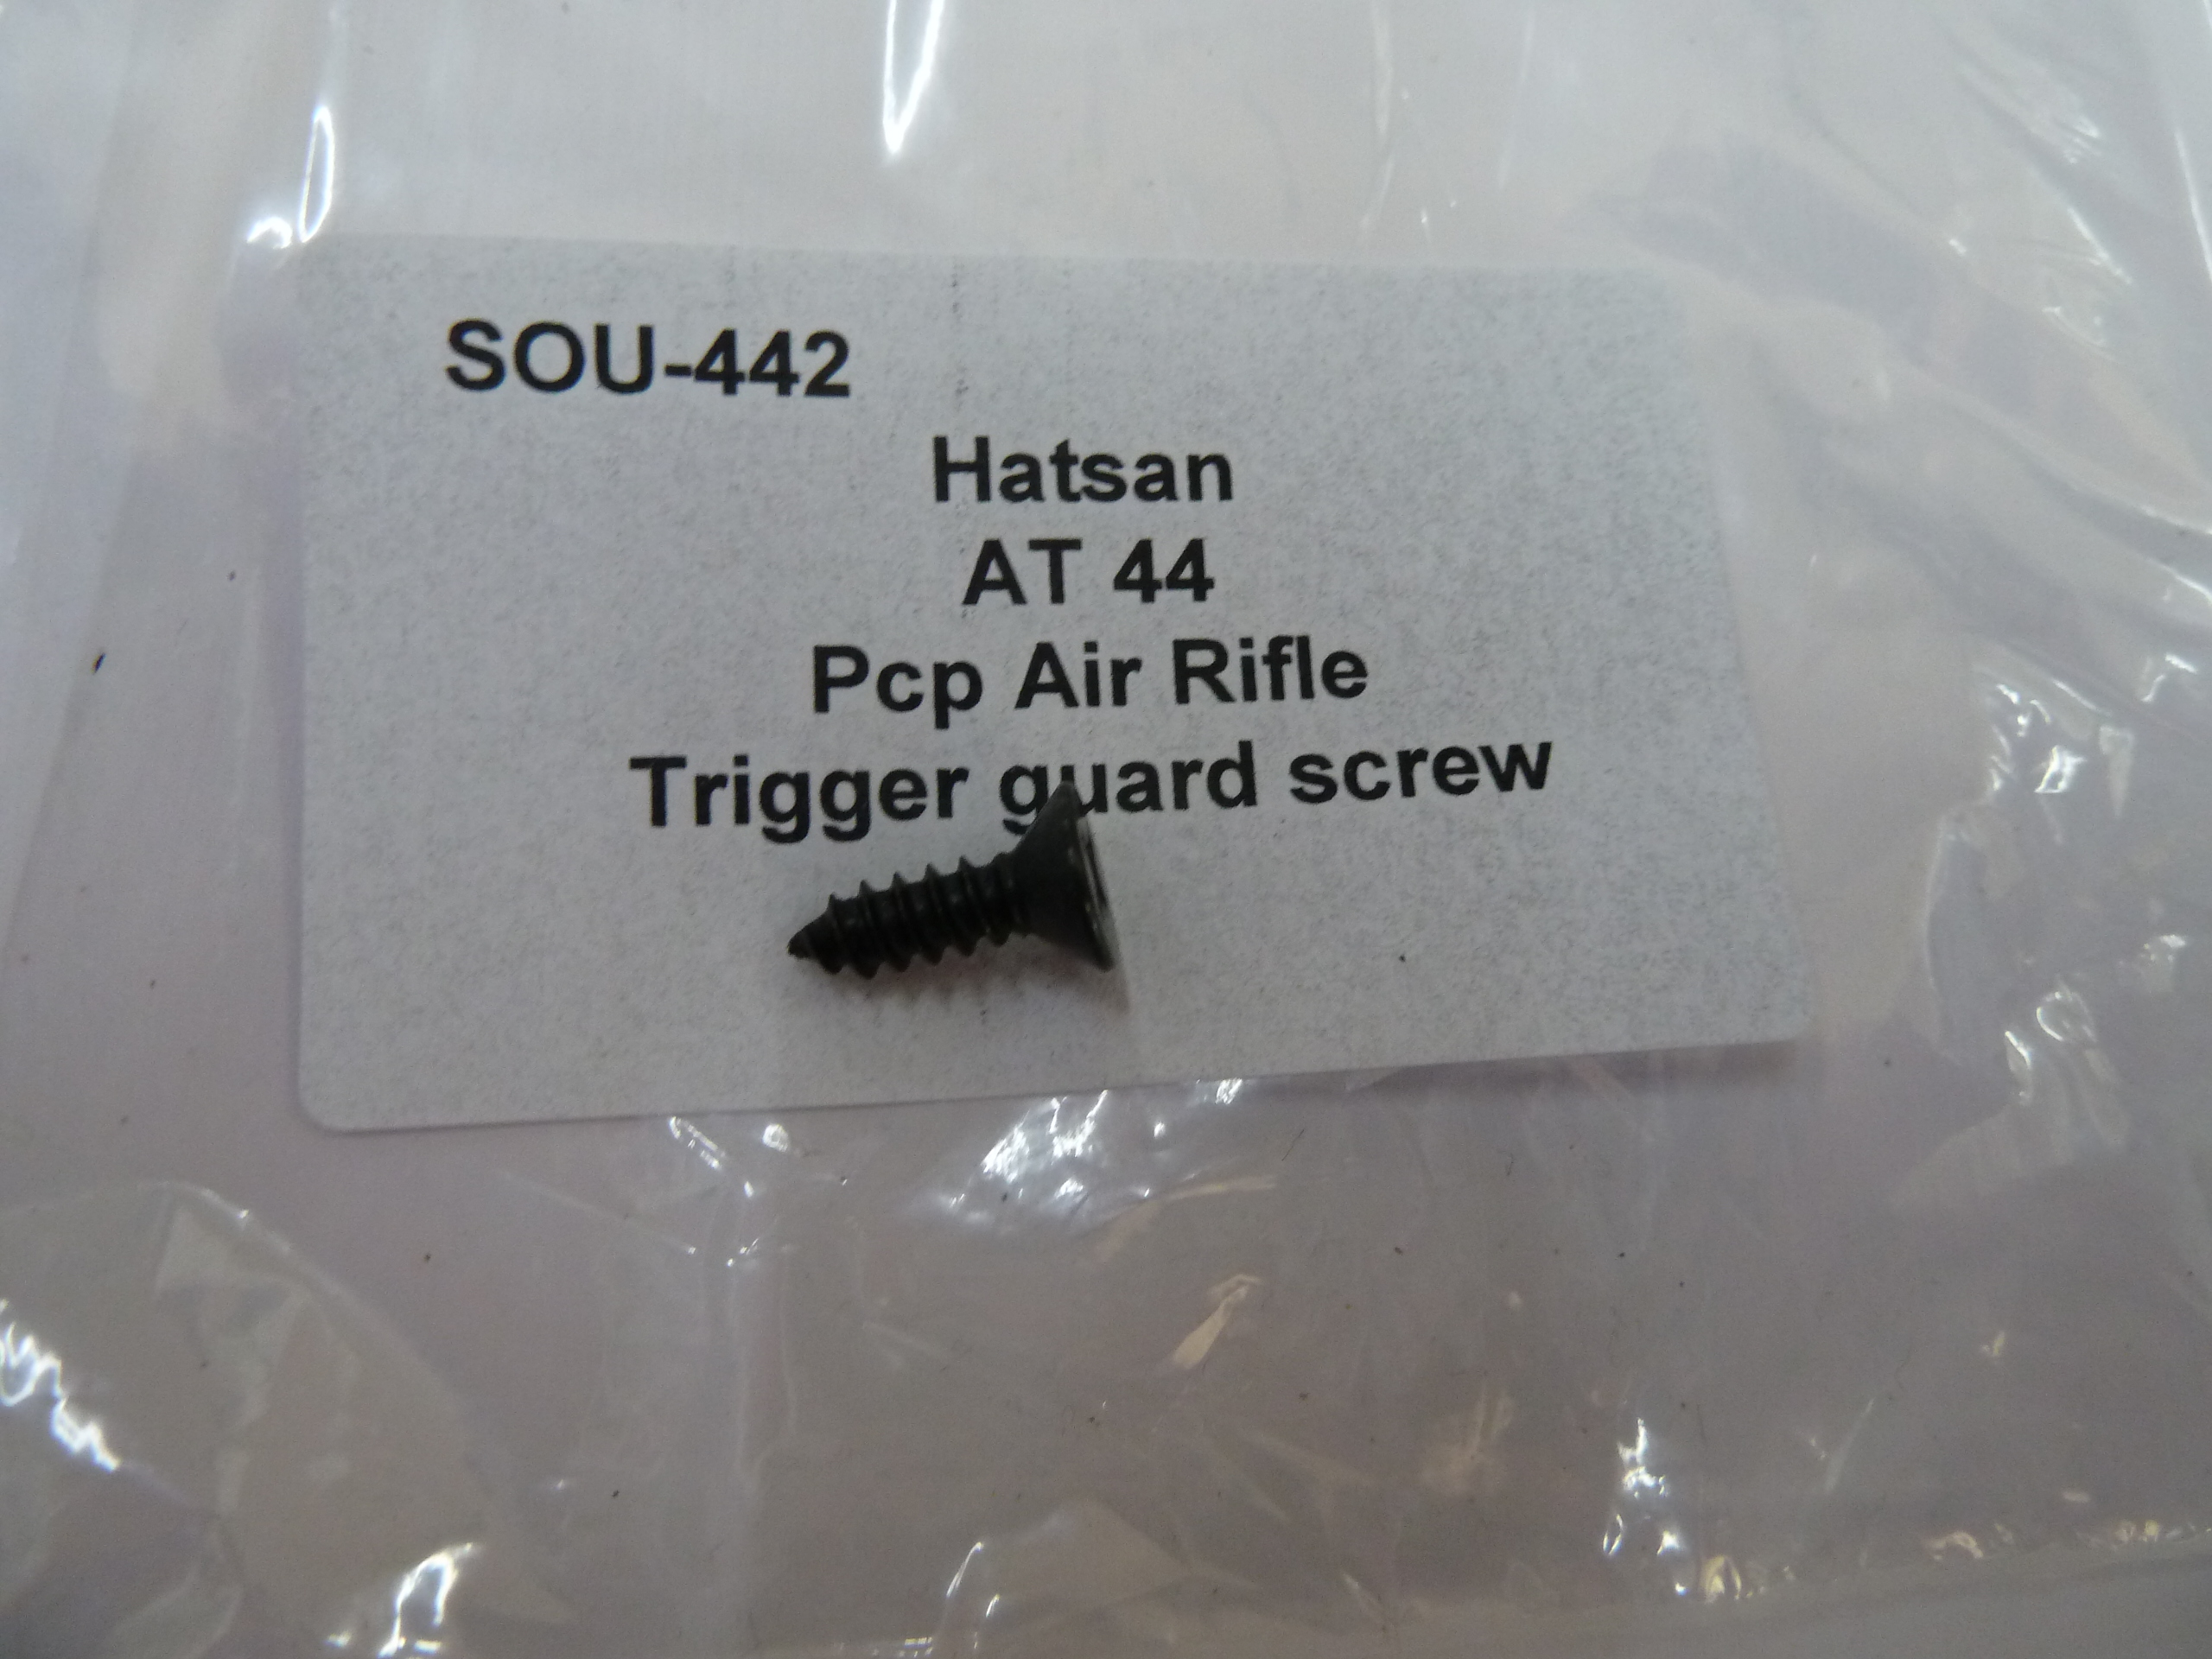 Hatsan AT44 trigger guard screw